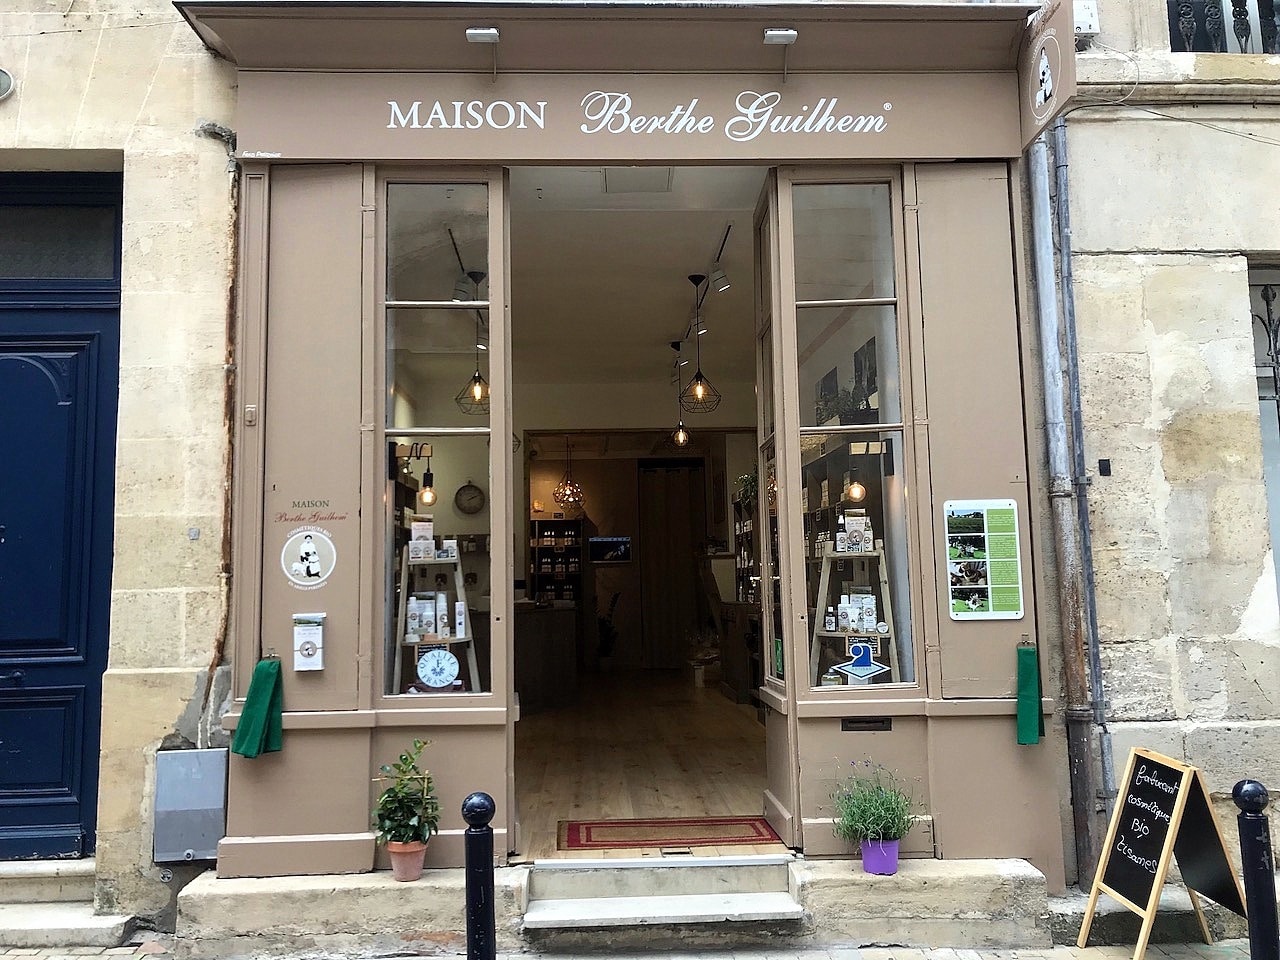 La Maison Berthe Guilhem Boutique Bordeaux